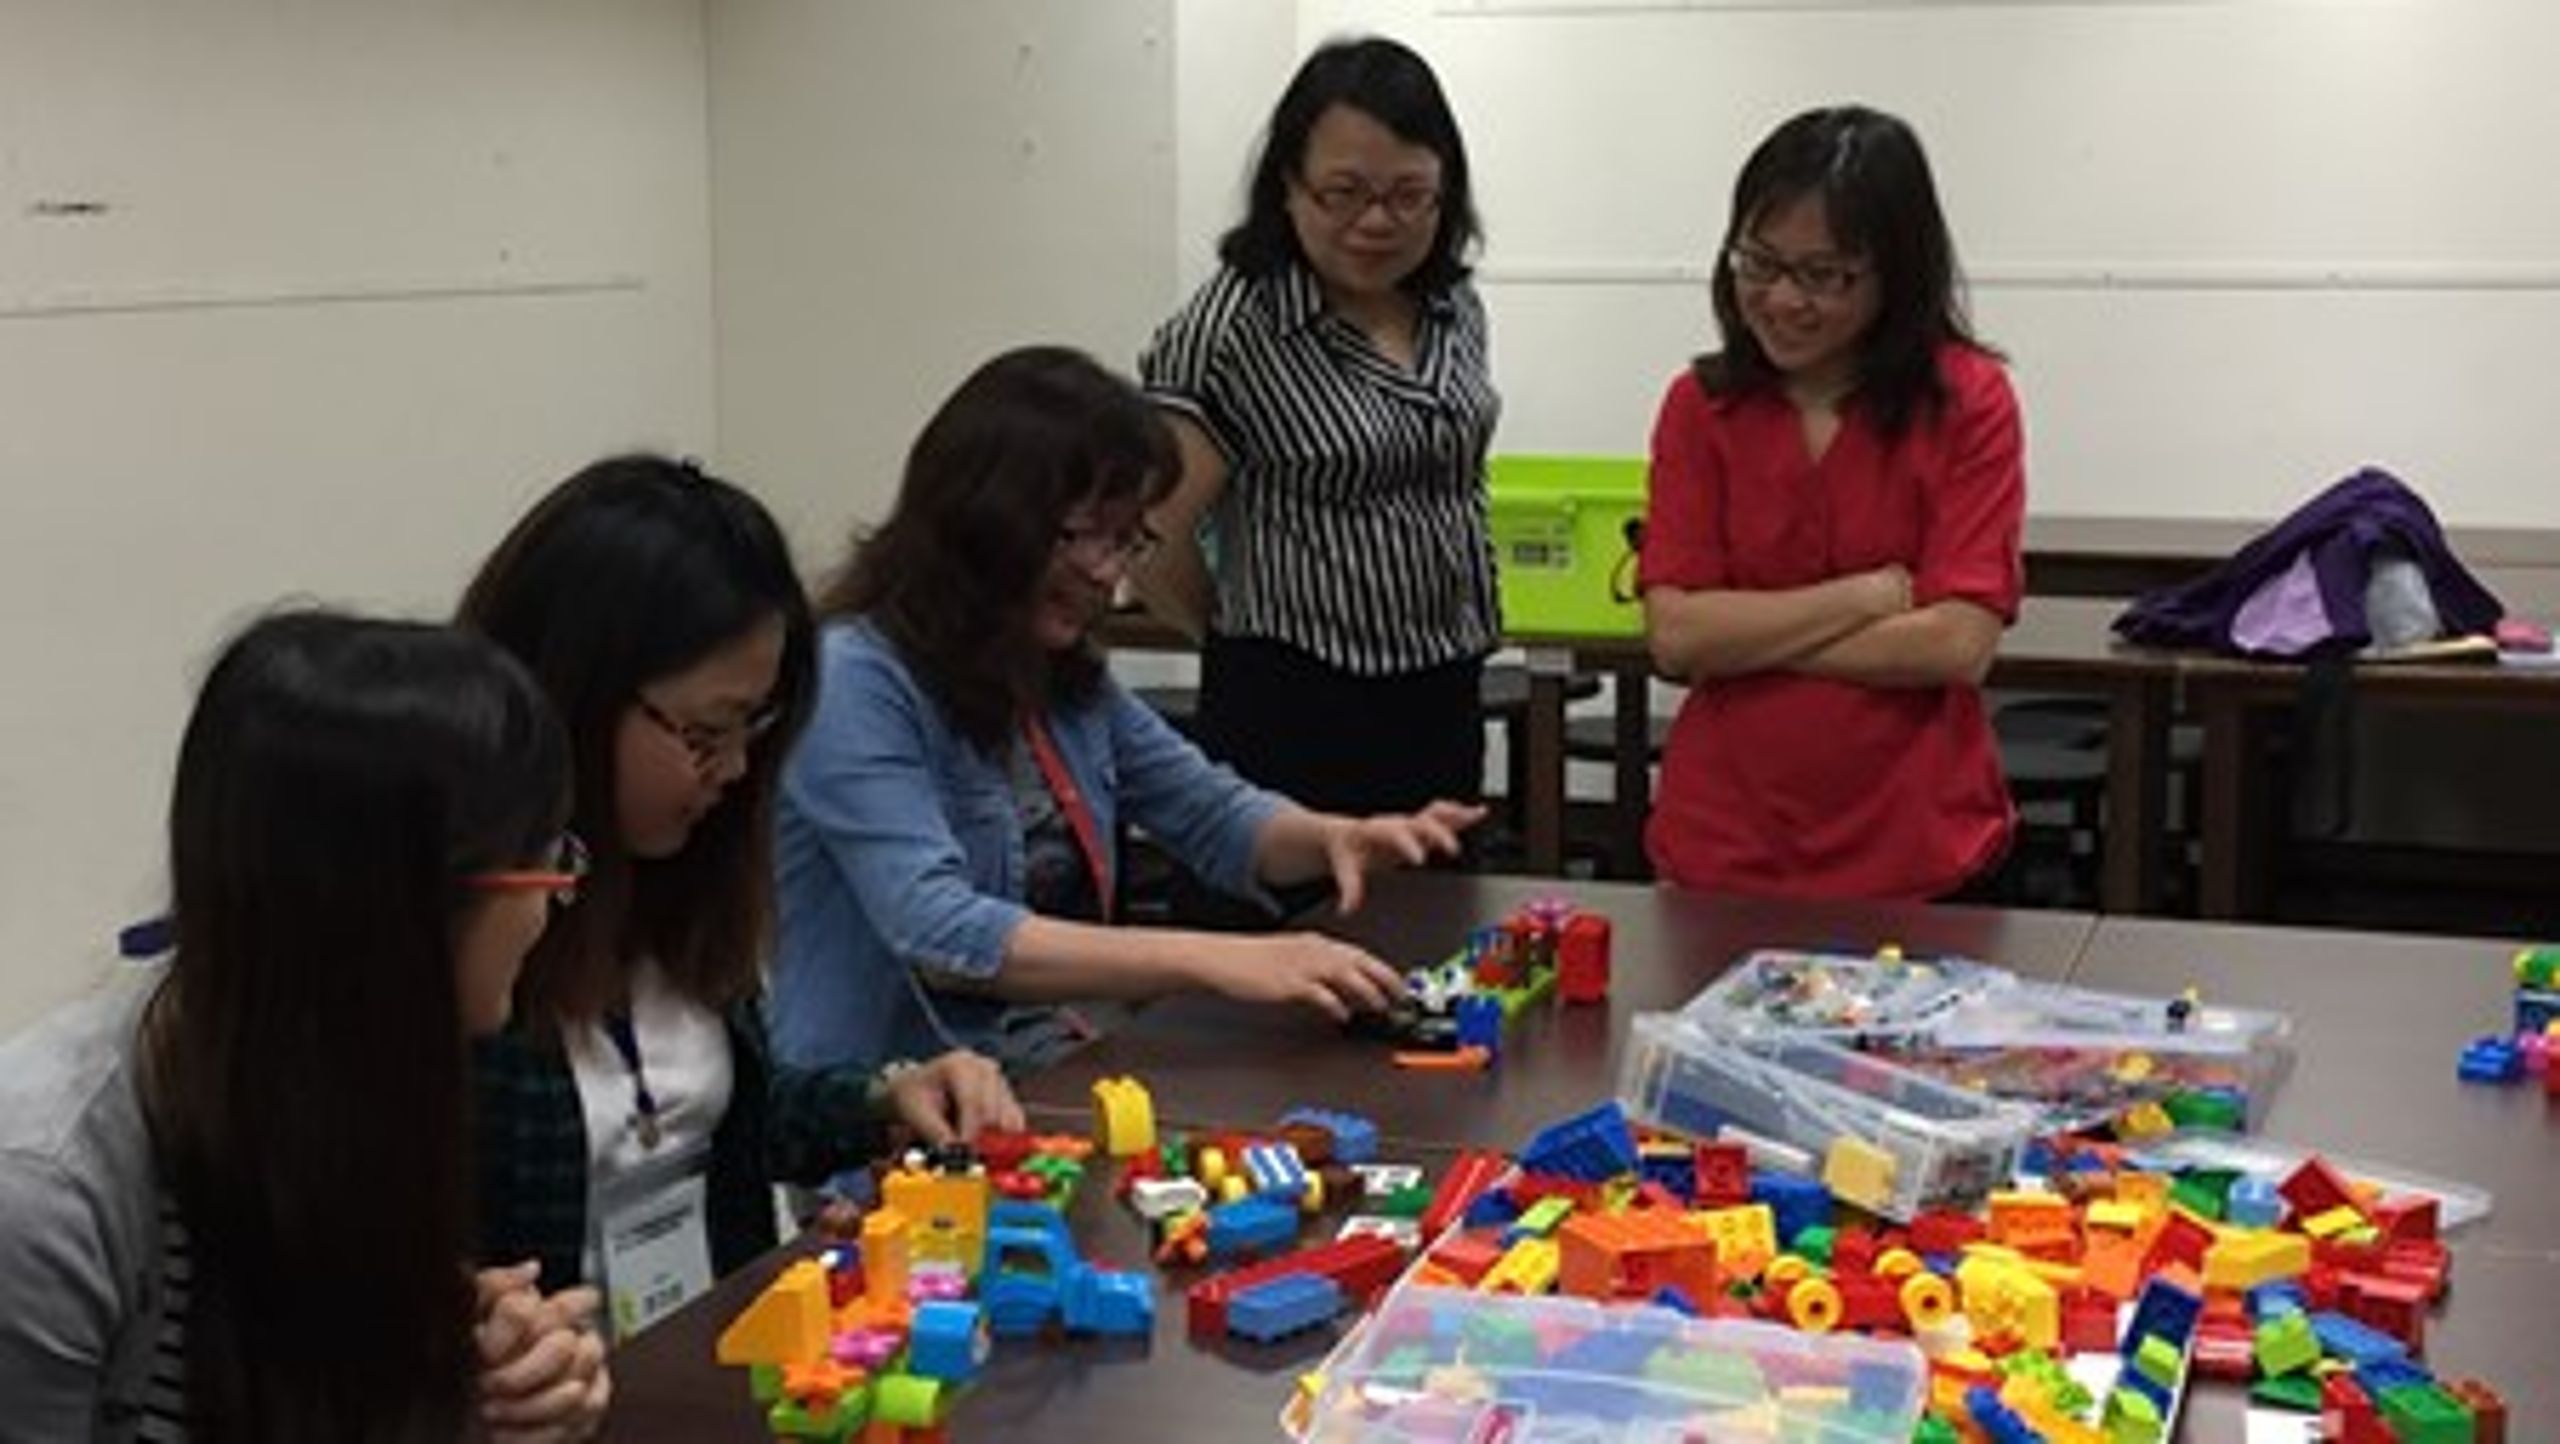 Lisa Lin Halskov, partner og innovationskonsulent i Copenhagen Living Lab, promoverer brugen af Lego i ældreplejen blandt taiwanesisk sundhedspersonale.